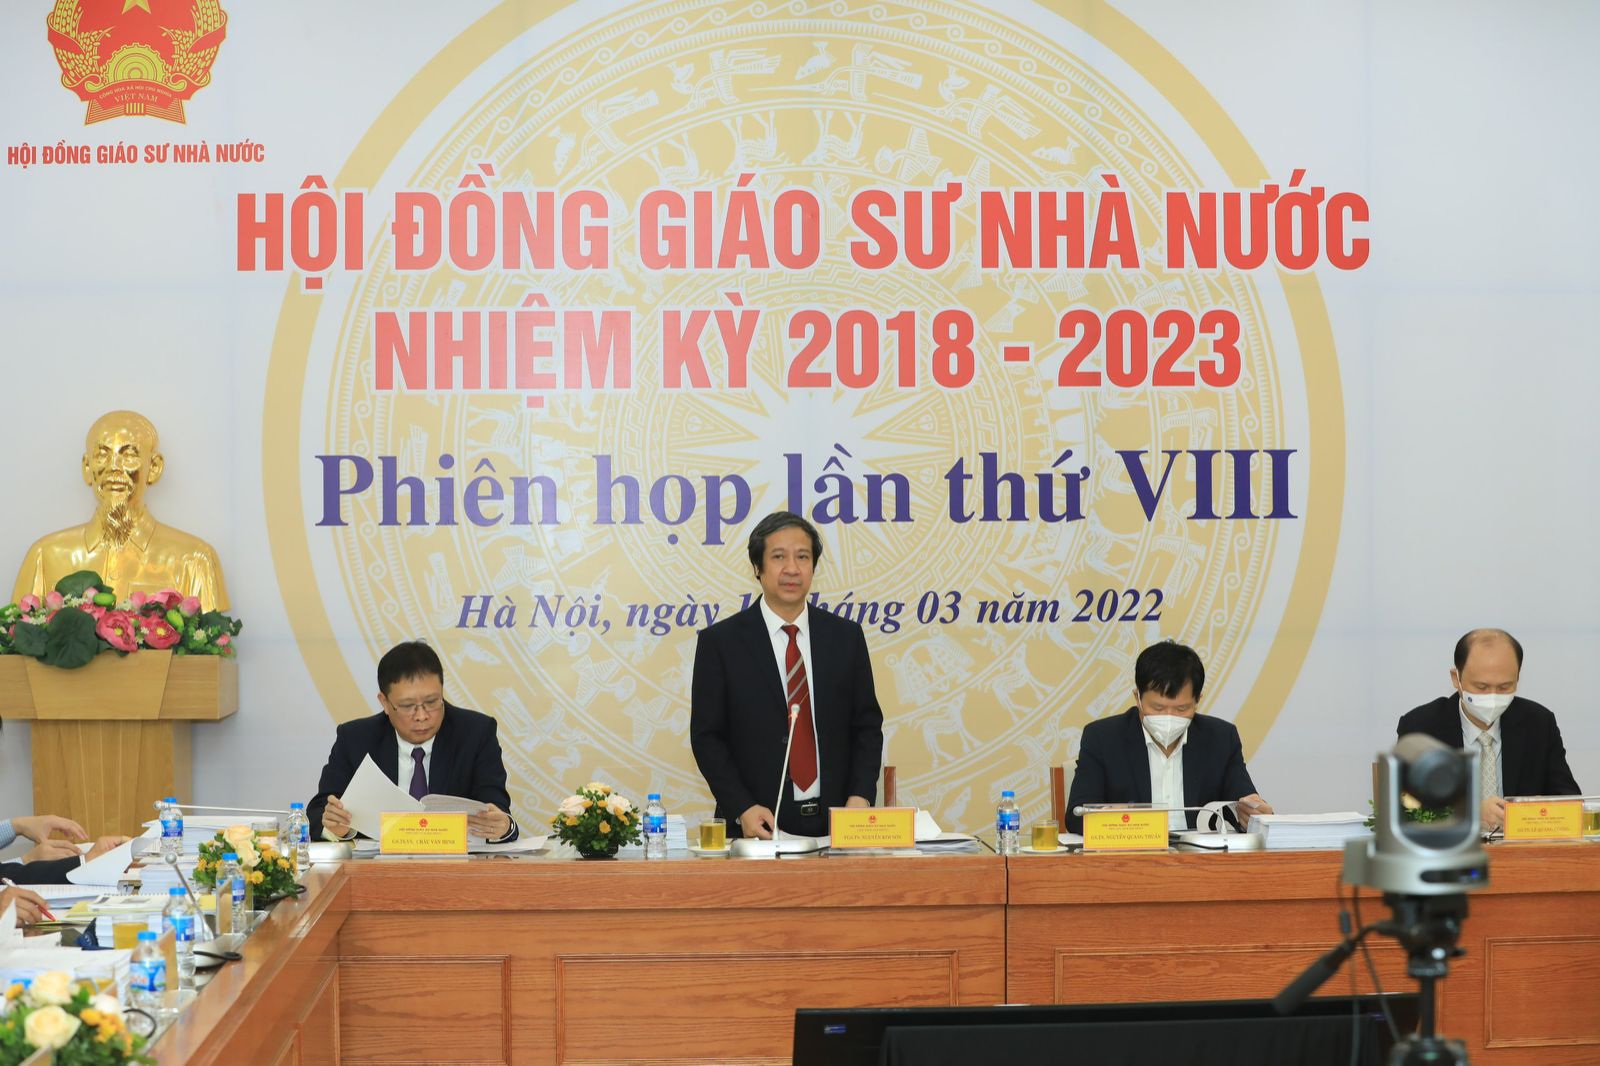 Chân dung tân Giáo sư trẻ nhất Việt Nam năm 2021 - 41 tuổi - Ảnh 2.